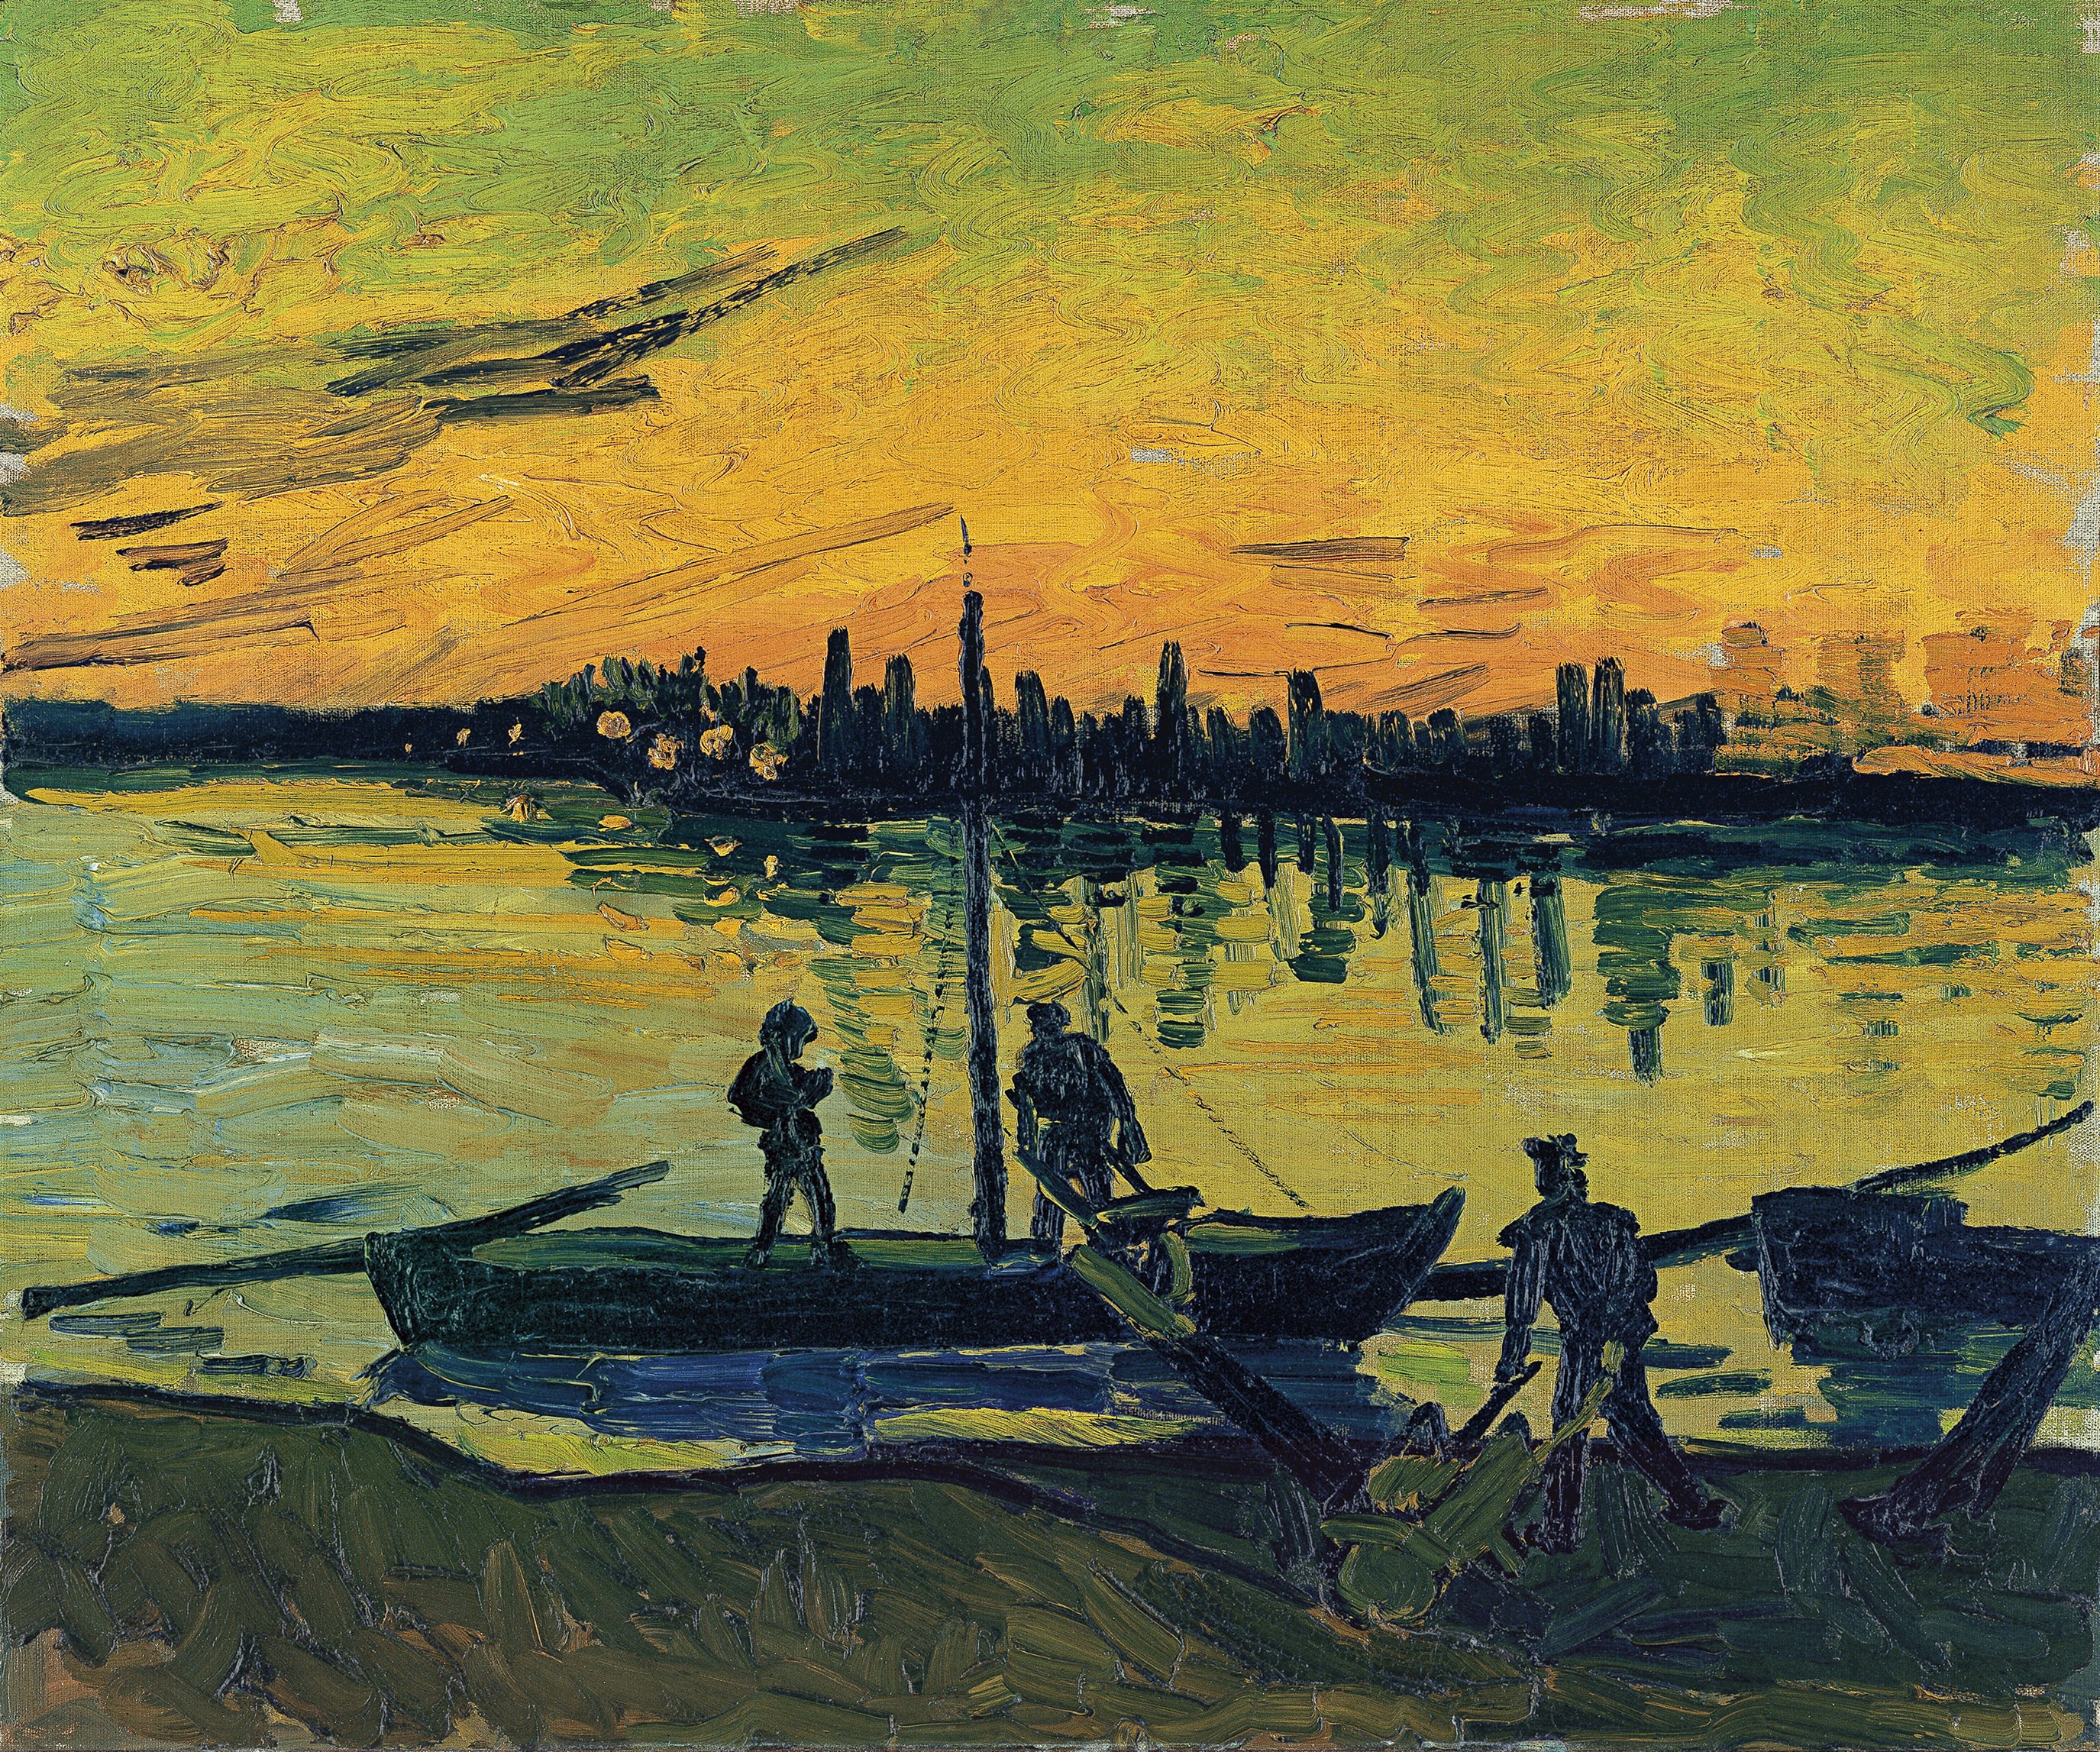 Les manutentionnaires à Arles by Vincent van Gogh - 1888 - 54 x 65 cm 